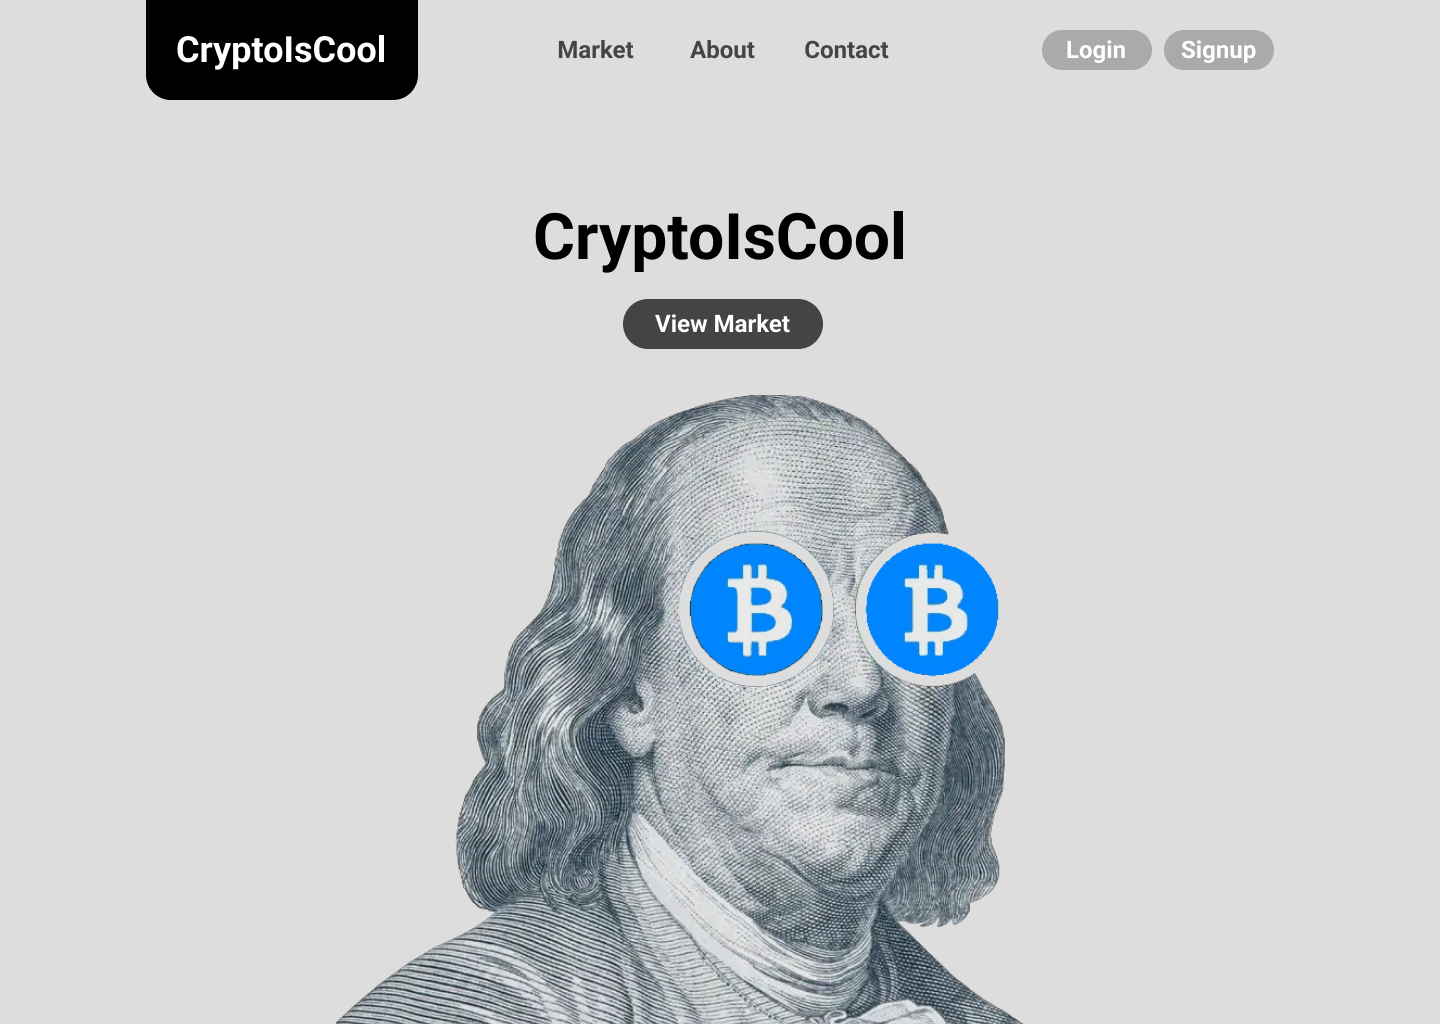 CryptoIsCool